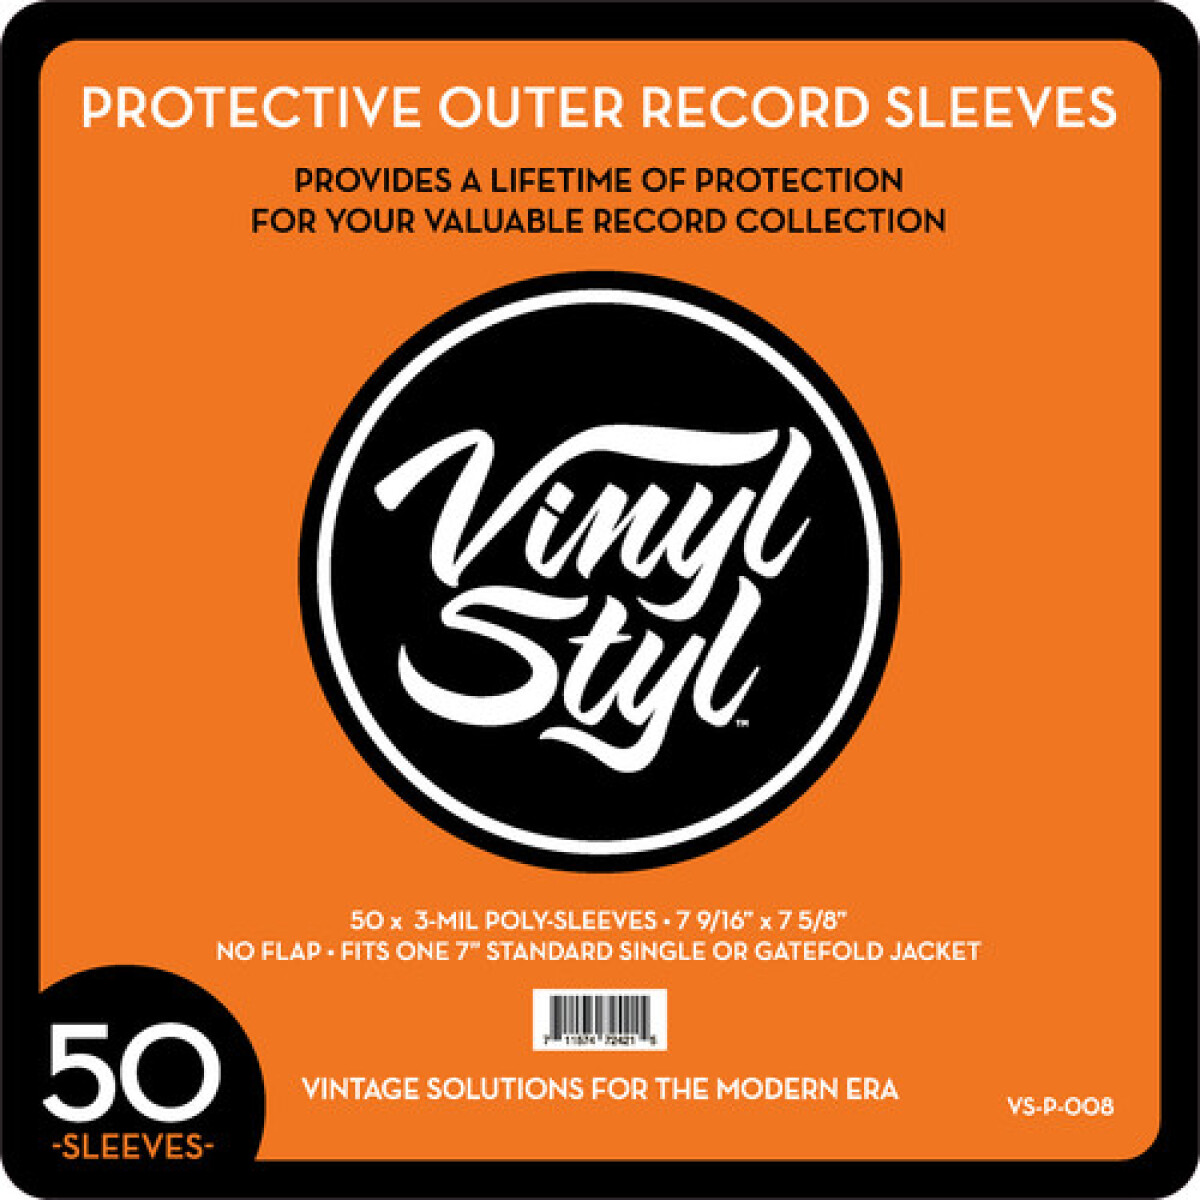 Protectores Para Vinilo De Nylon X50 Vinyl Styl 7"" 